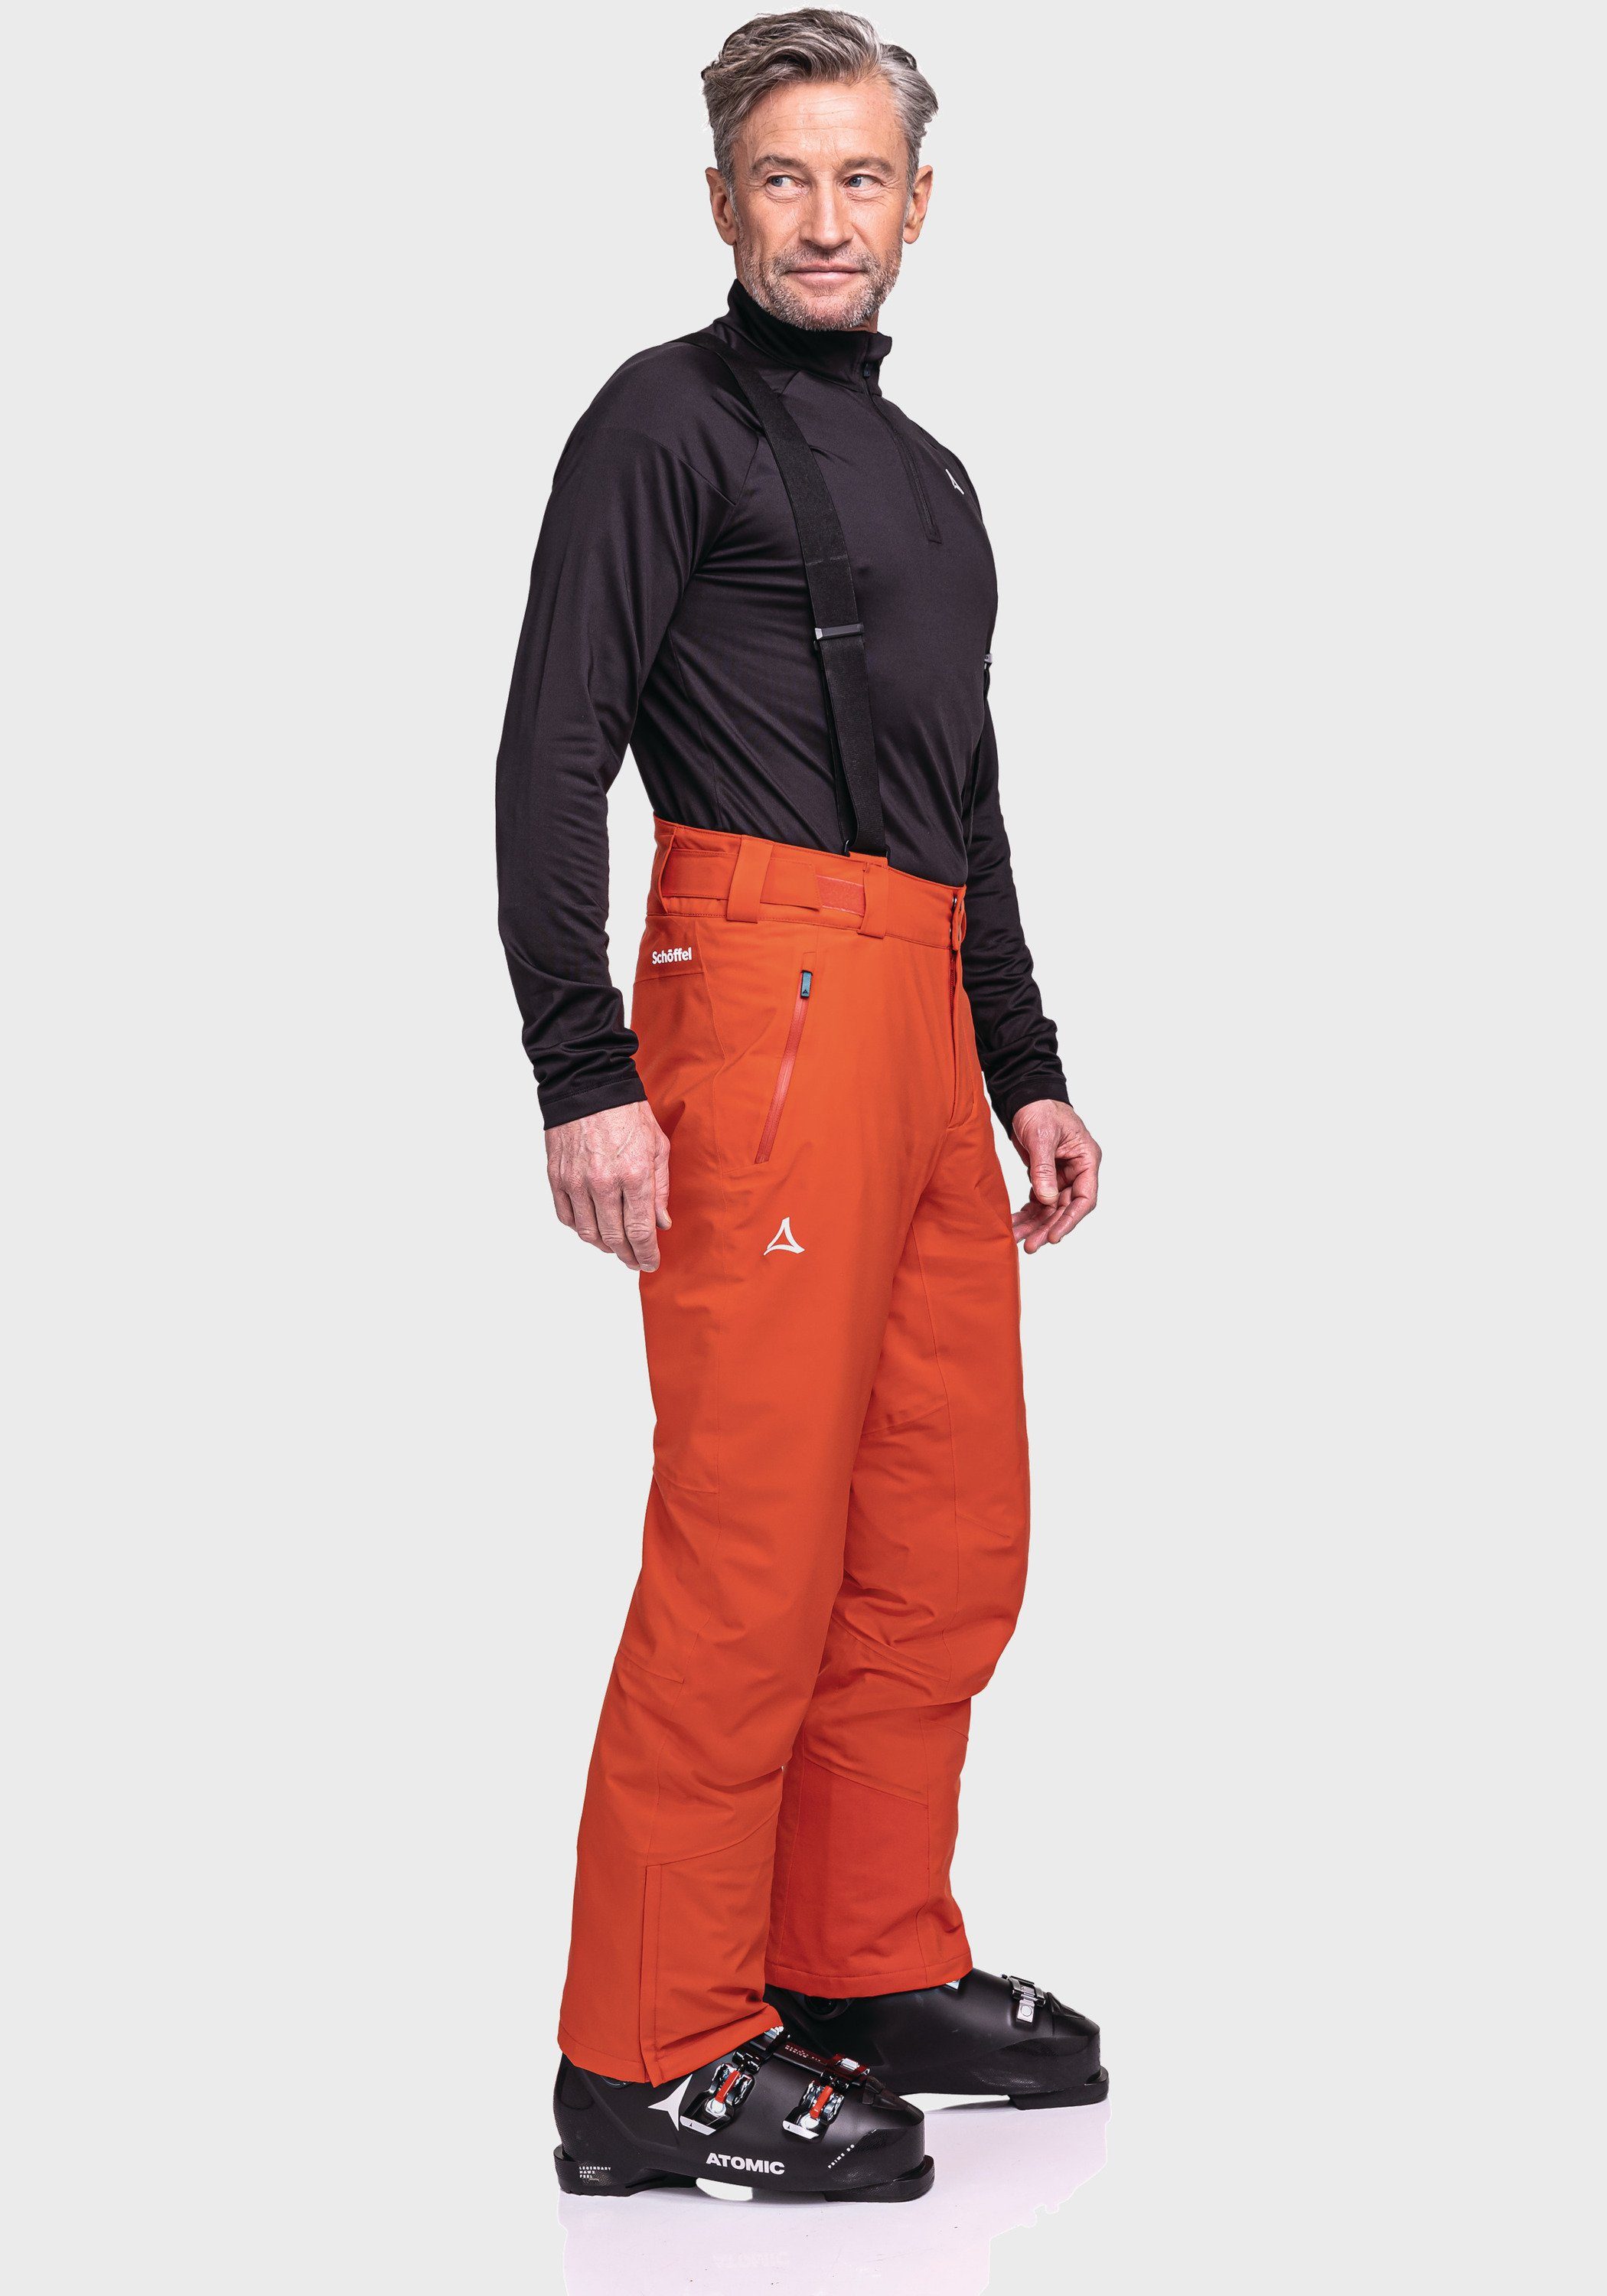 Pants orange M Weissach Ski Schöffel Latzhose